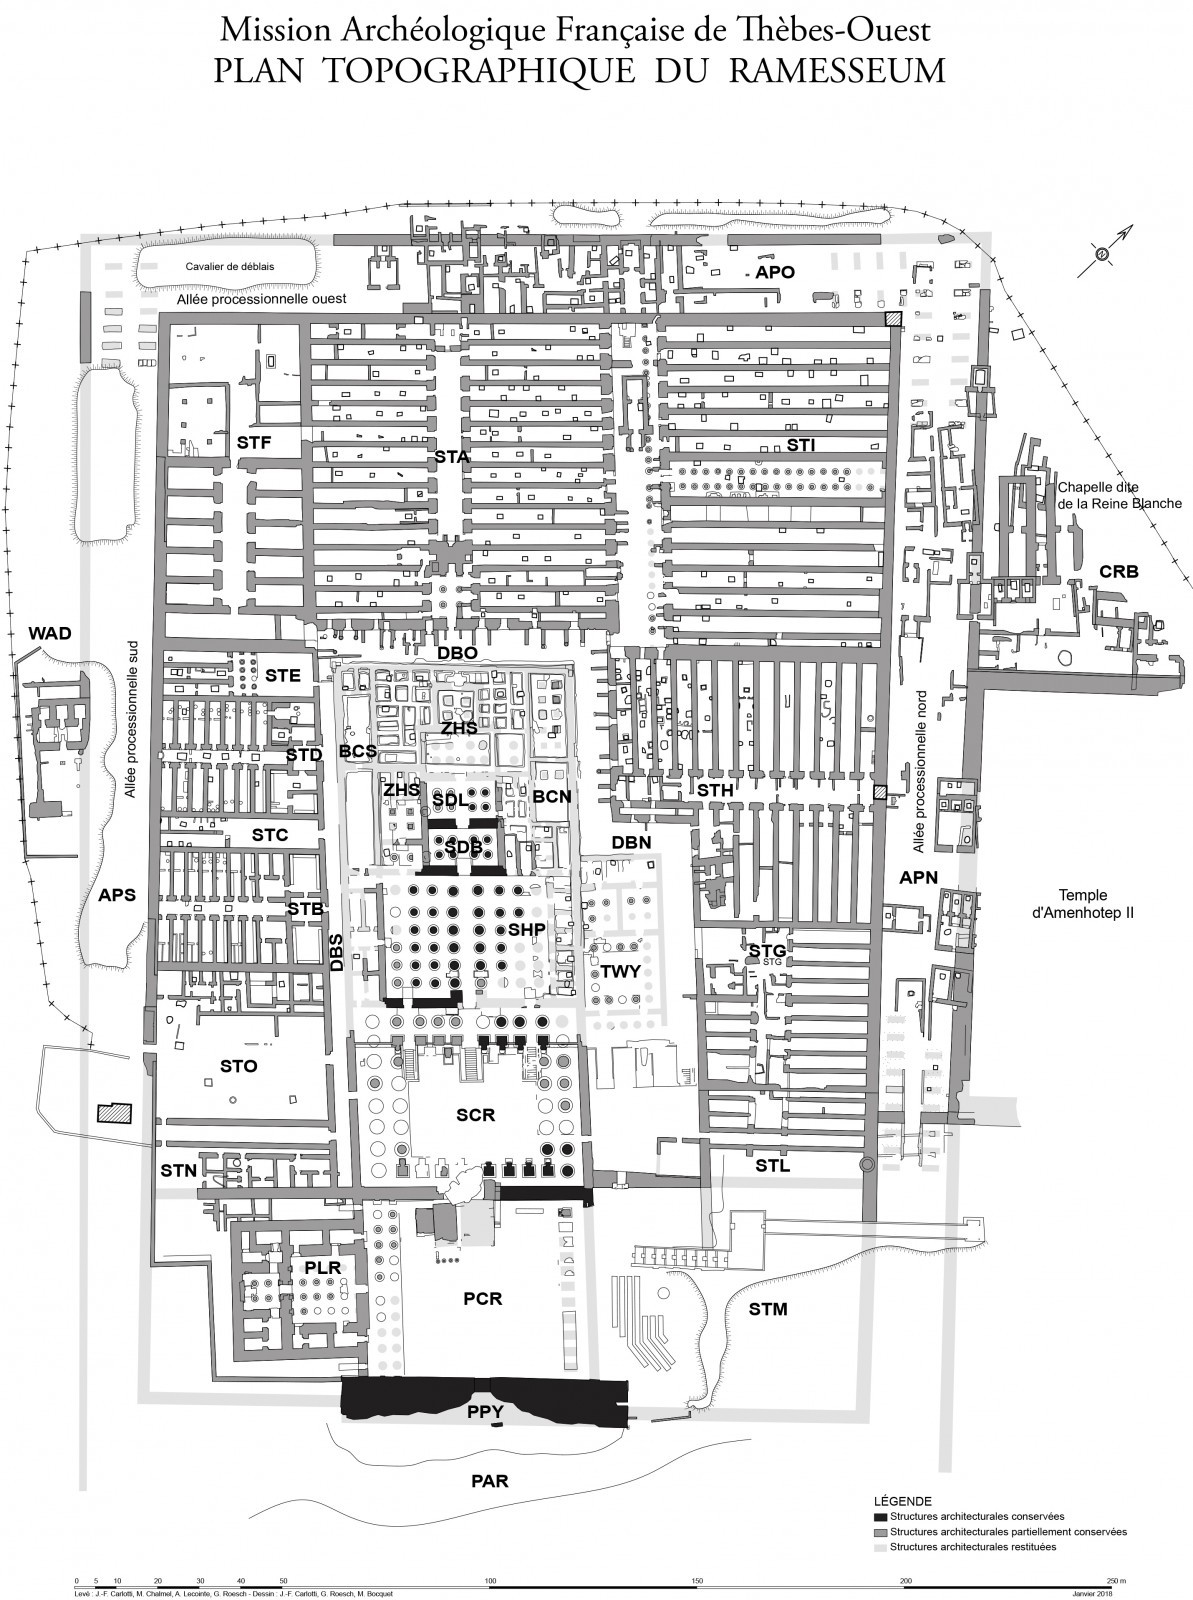 Plan topographique du Ramesseum ou temple de millions d’années de Ramsès II. D’après le relevé de J.-Fr. Carlotti, M. Chalmel, A. Lecointe, G. Roesch.